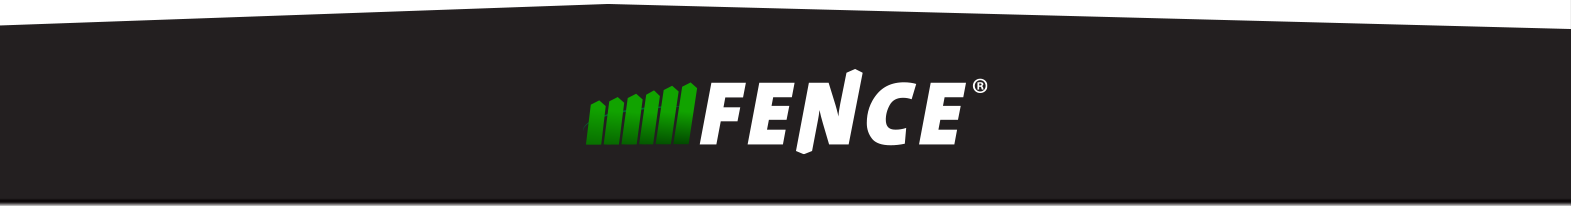 GR-Fence logo pod Glavo